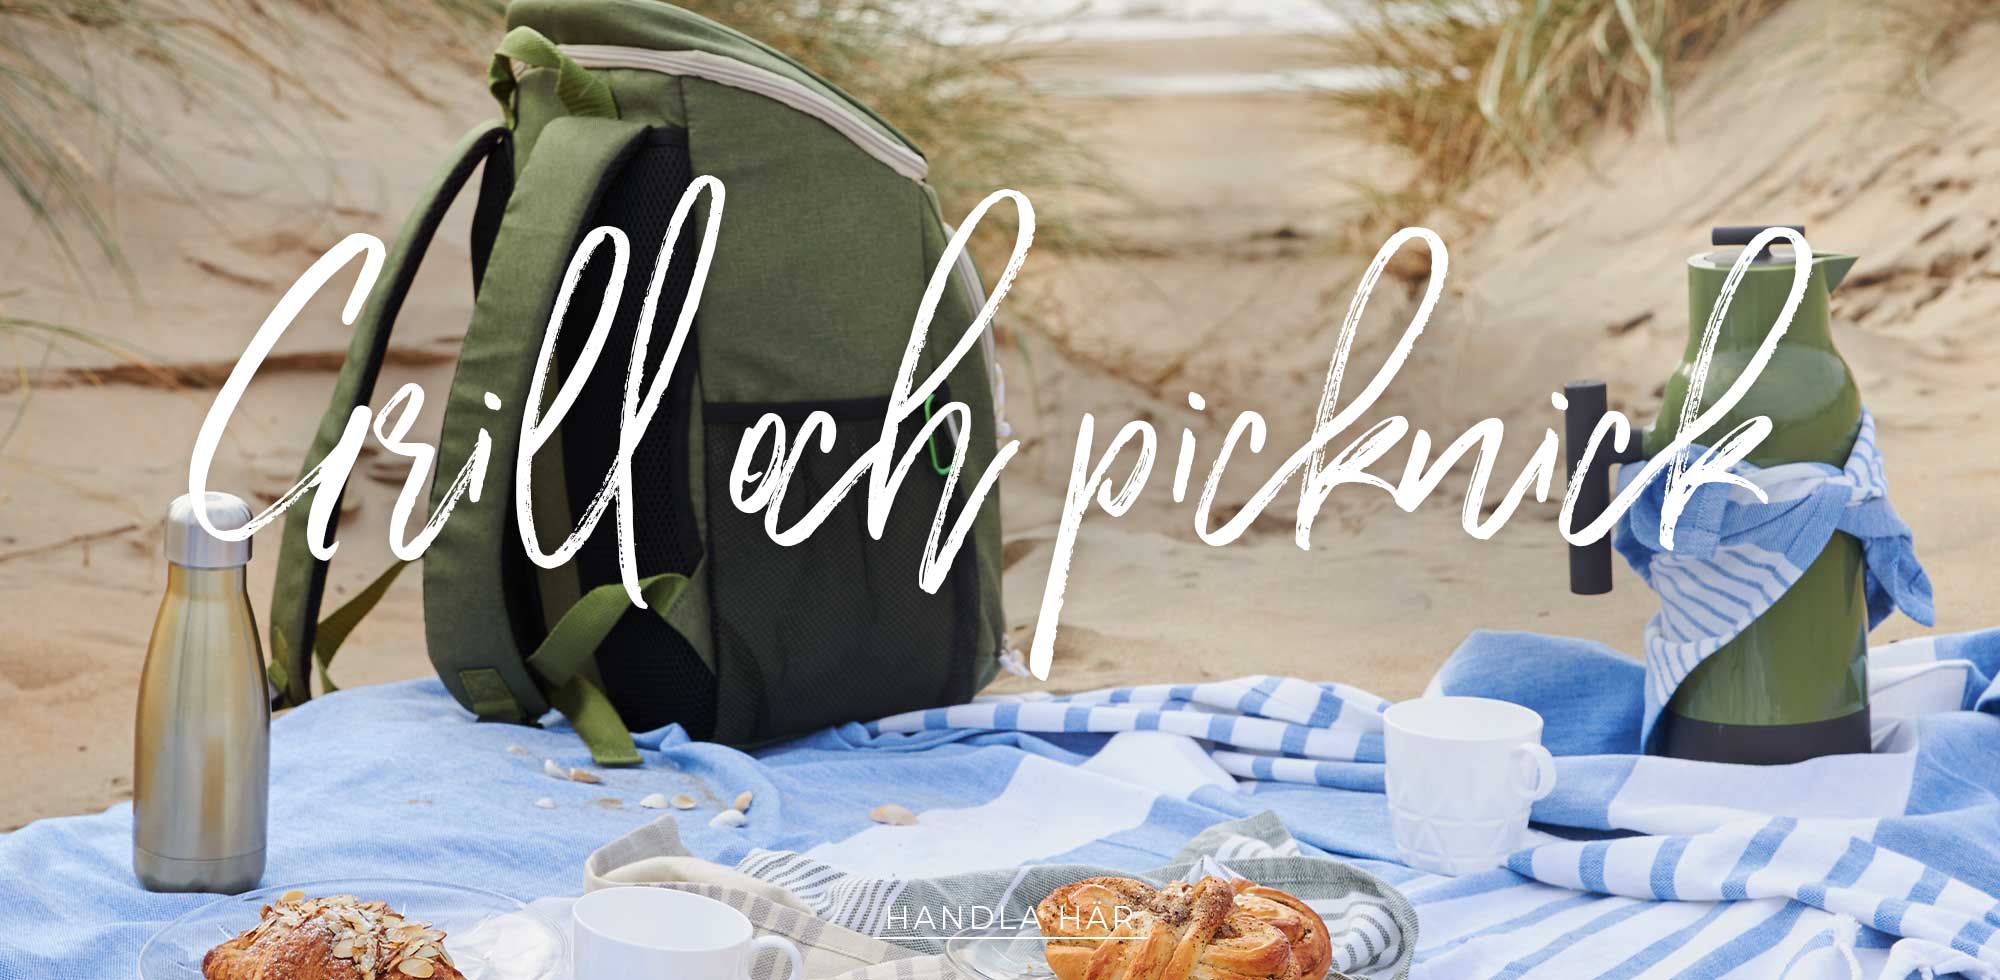 <h3>PICKNICKSÄSONGEN ÄR HÄR! </h3> Nu när solen och värmen börjar titta fram kan det vara bra att ha picknickprylarna redo för en mysig utflykt till parken eller stranden. Vi har kylväskor, picknickfiltar, termosar och massor av trevliga grilltillbehör så som grillredskap, bbq-såser och goda kryddor. Allt för en lyckad picknick och grillning!